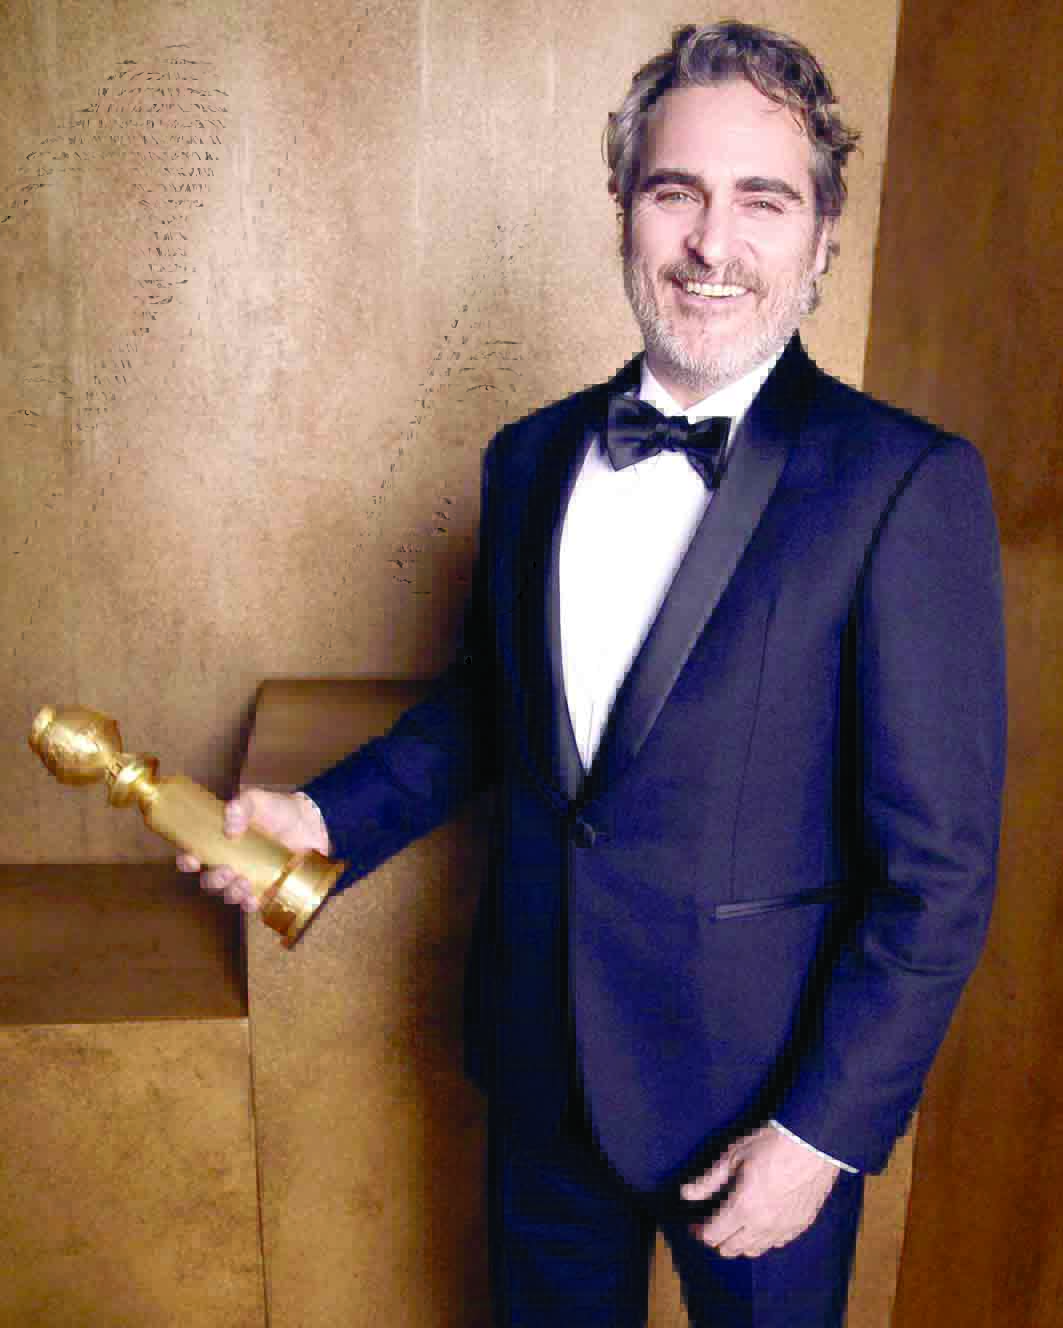 Phoenix gana premio al “Mejor actor” en los “Globos de Oro”